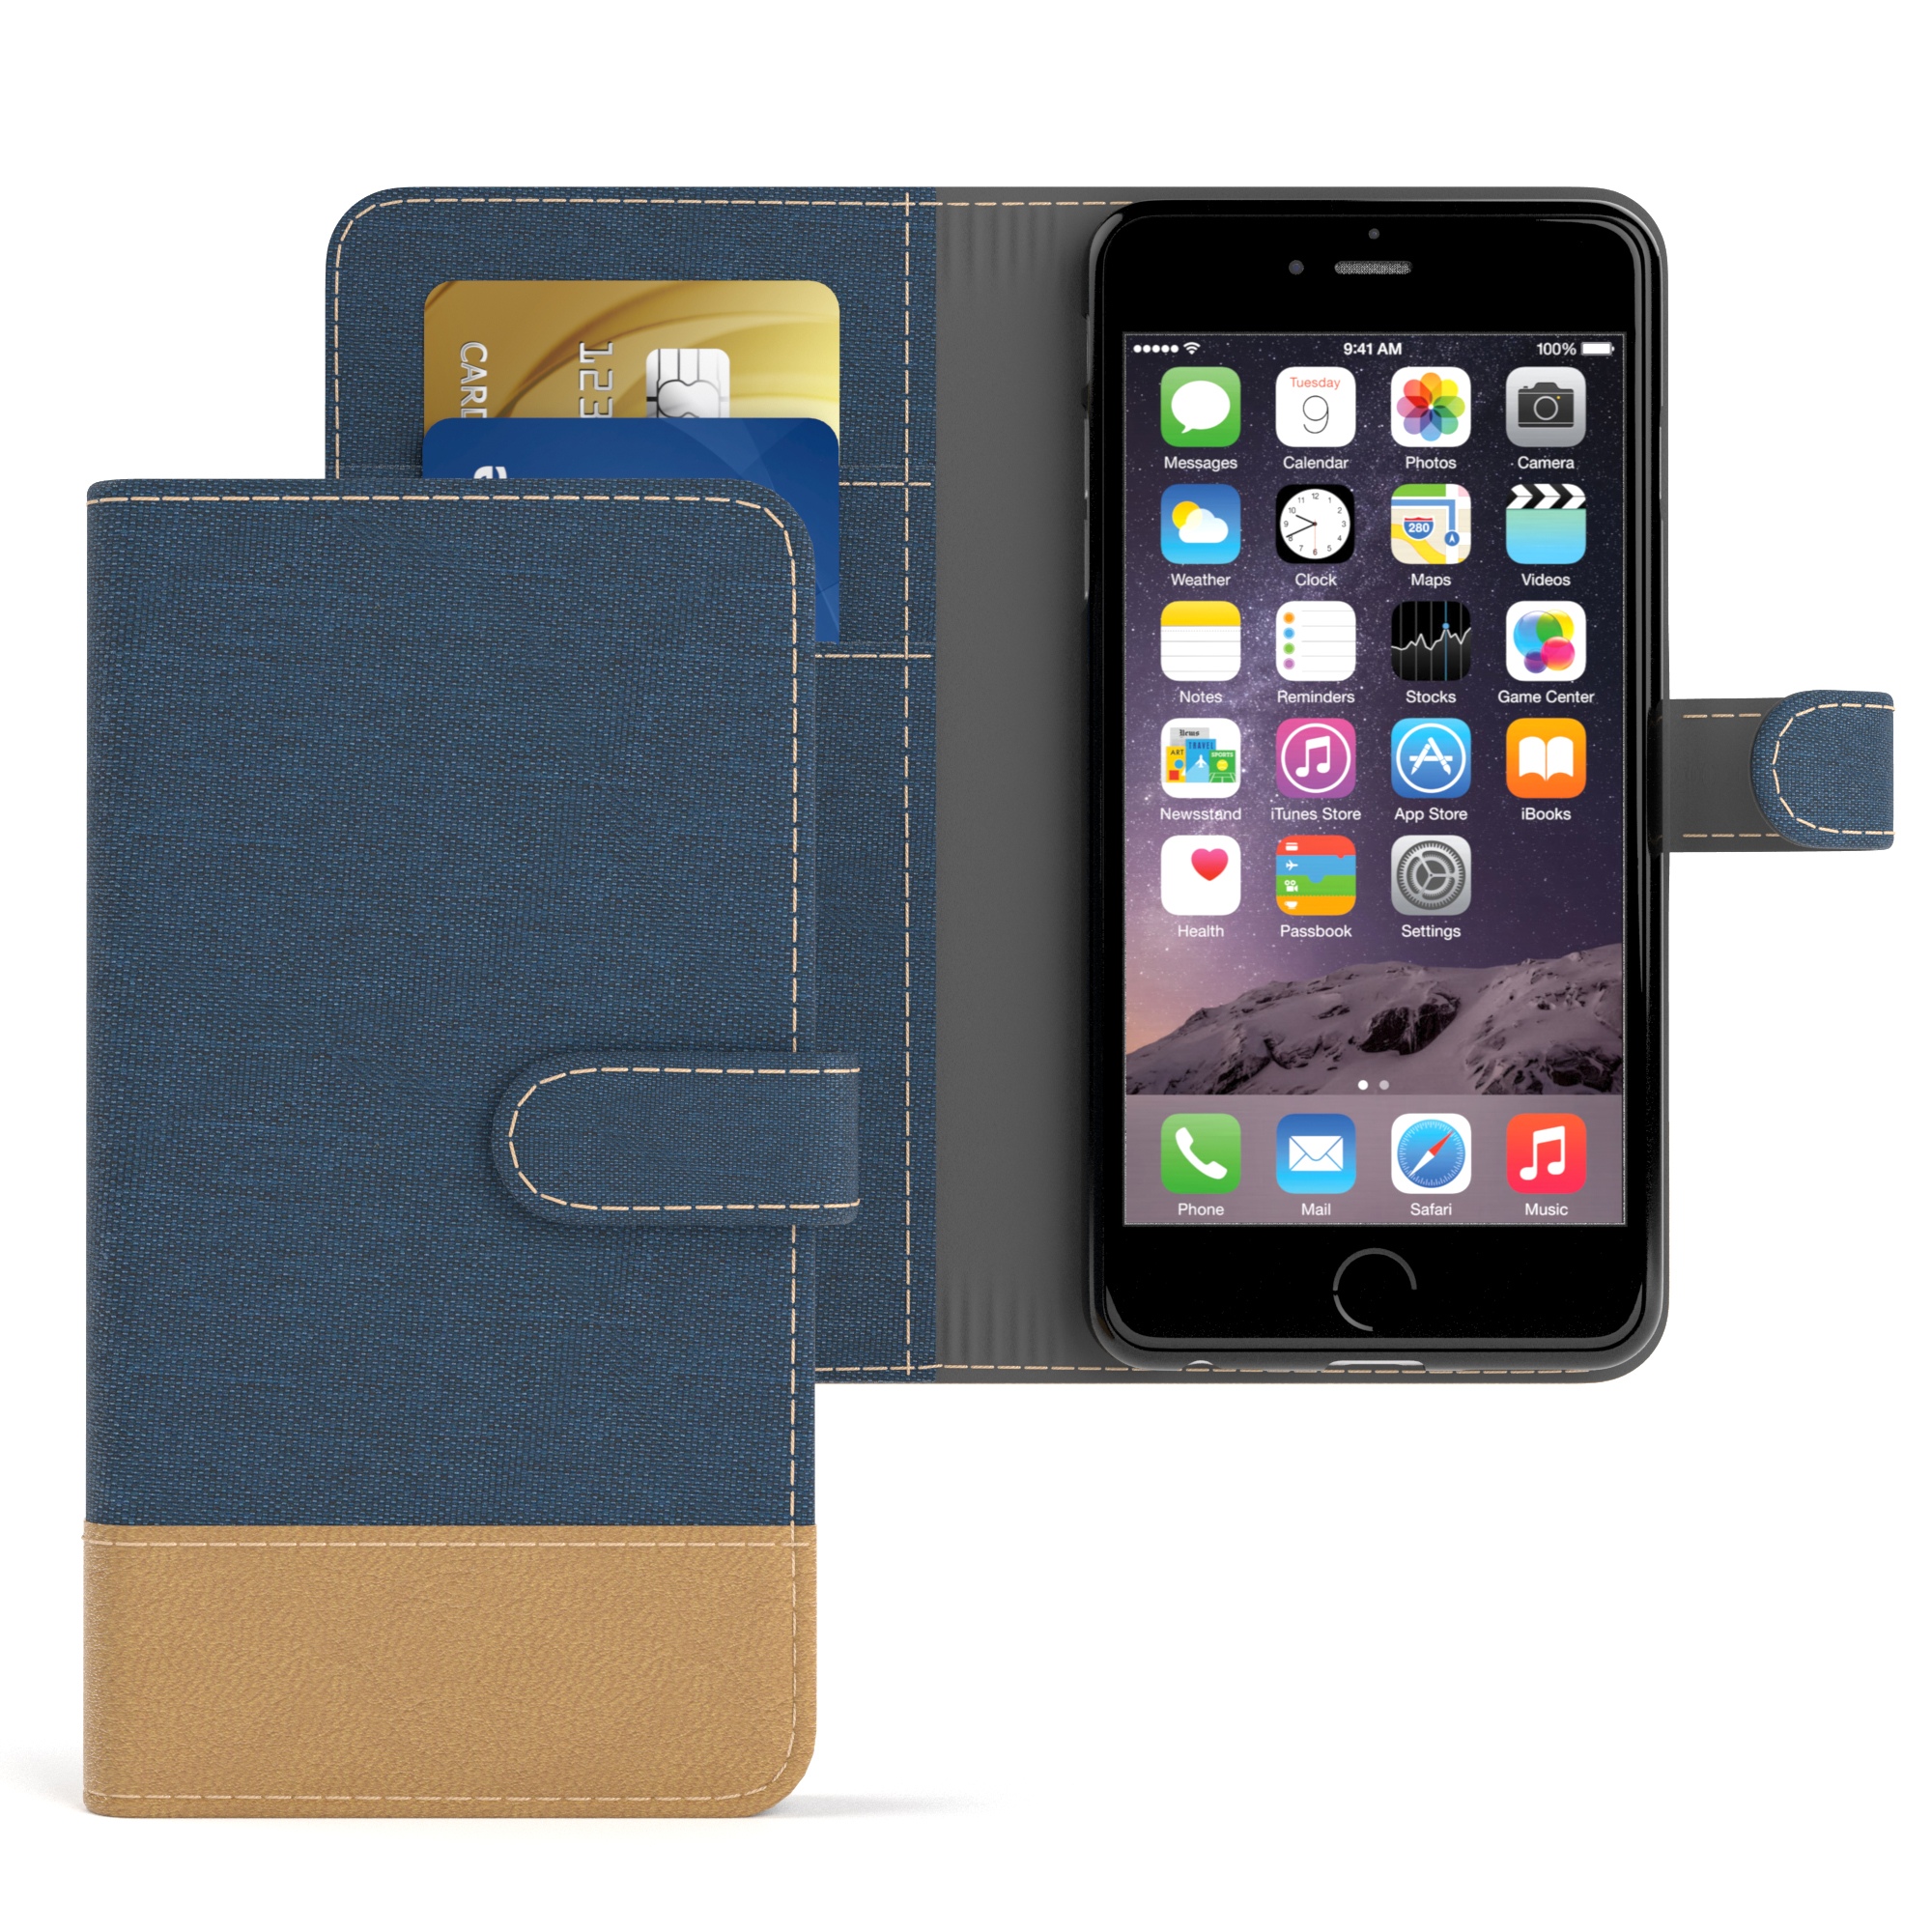 EAZY CASE Bookstyle mit Bookcover, Kartenfach, Apple, iPhone 6 Blau Klapphülle Jeans / 6S